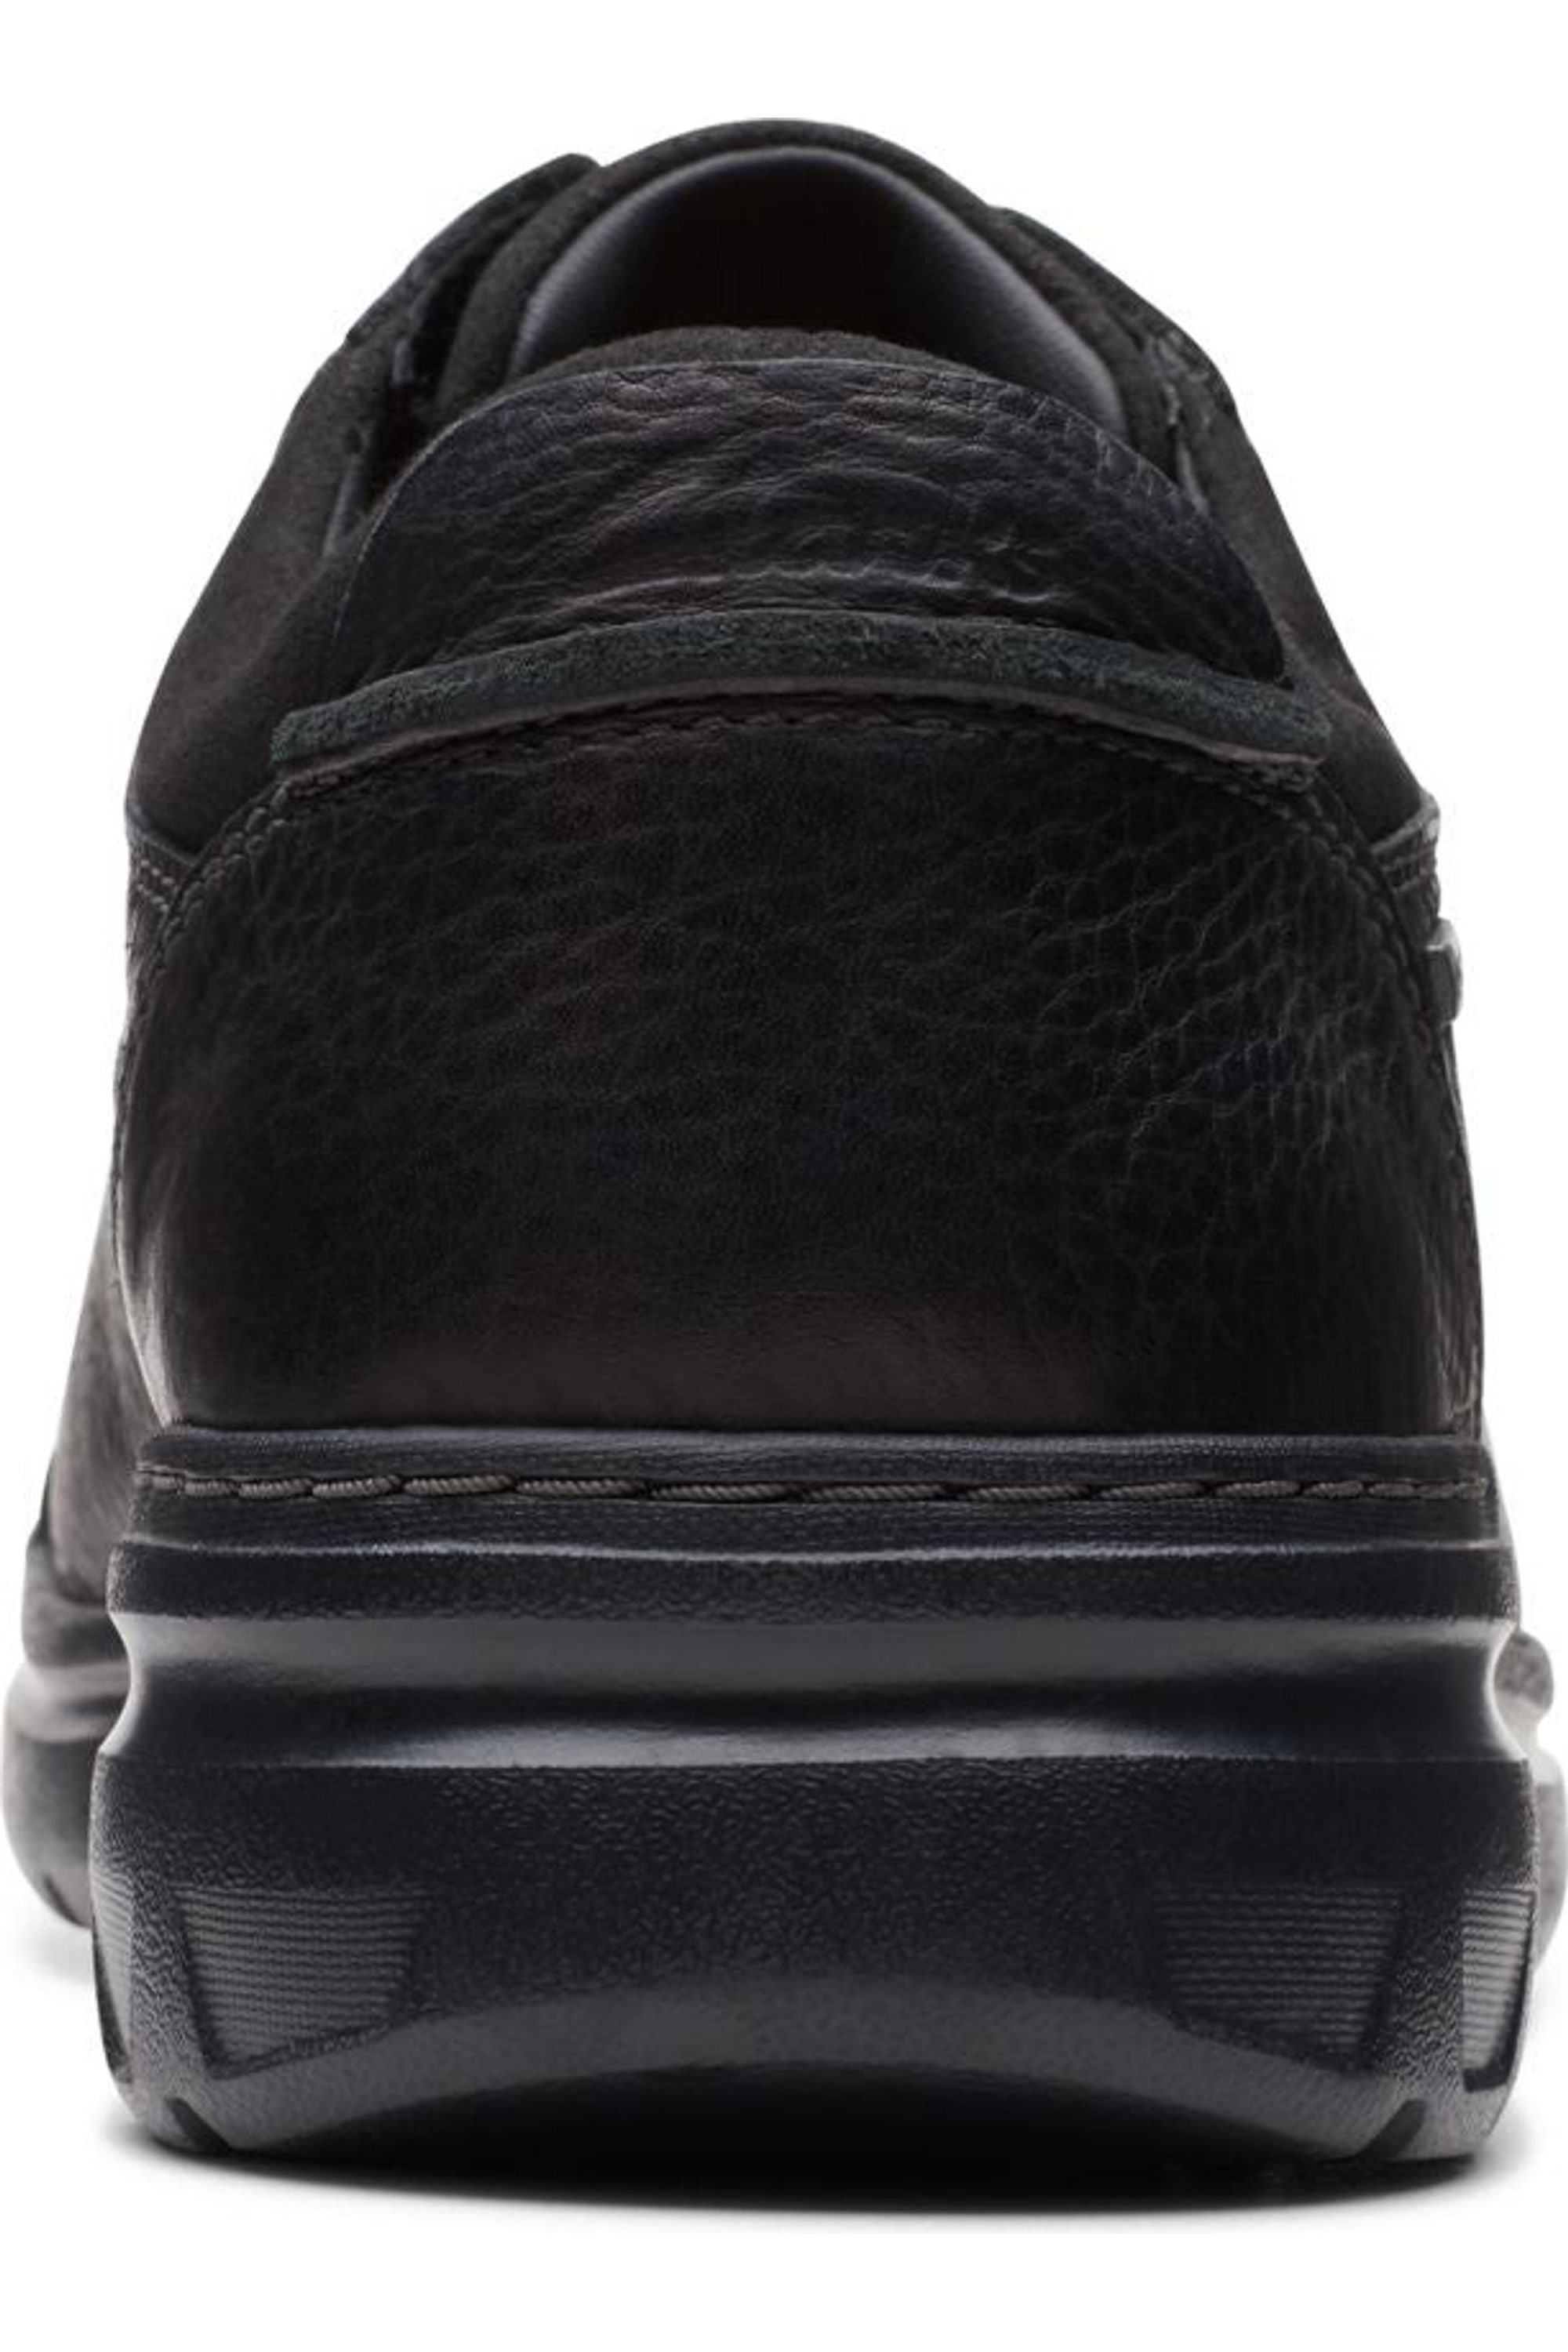 Clarks Mens Rockie WalkGTX waterproof shoe in black leather